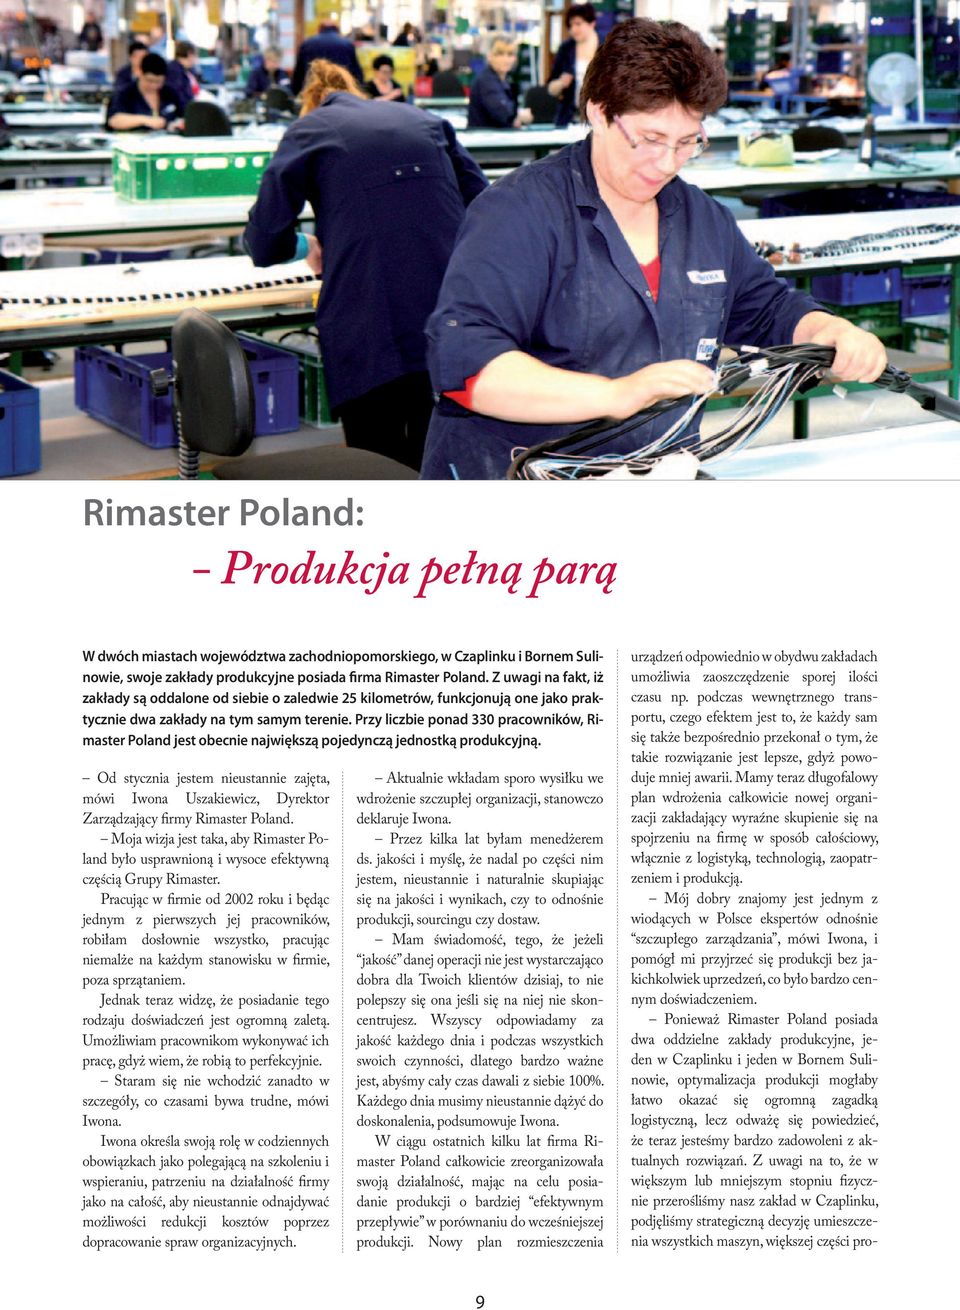 Przy liczbie ponad 330 pracowników, Rimaster Poland jest obecnie największą pojedynczą jednostką produkcyjną.